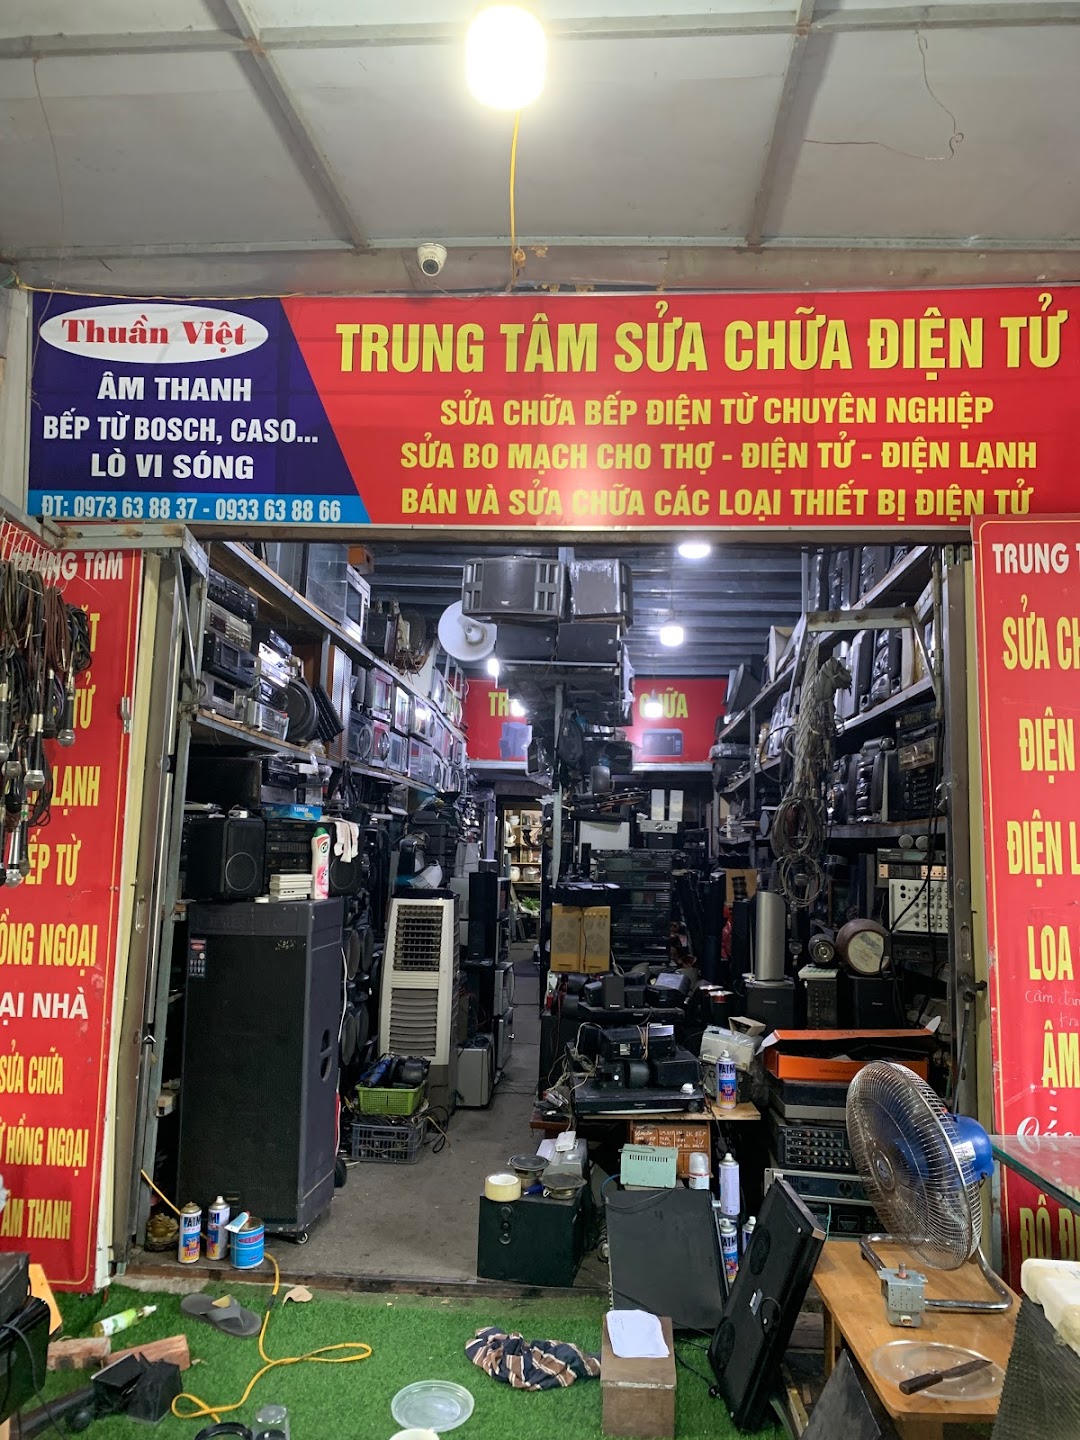 Trung tâm sửa chữa điện tử thuần Việt